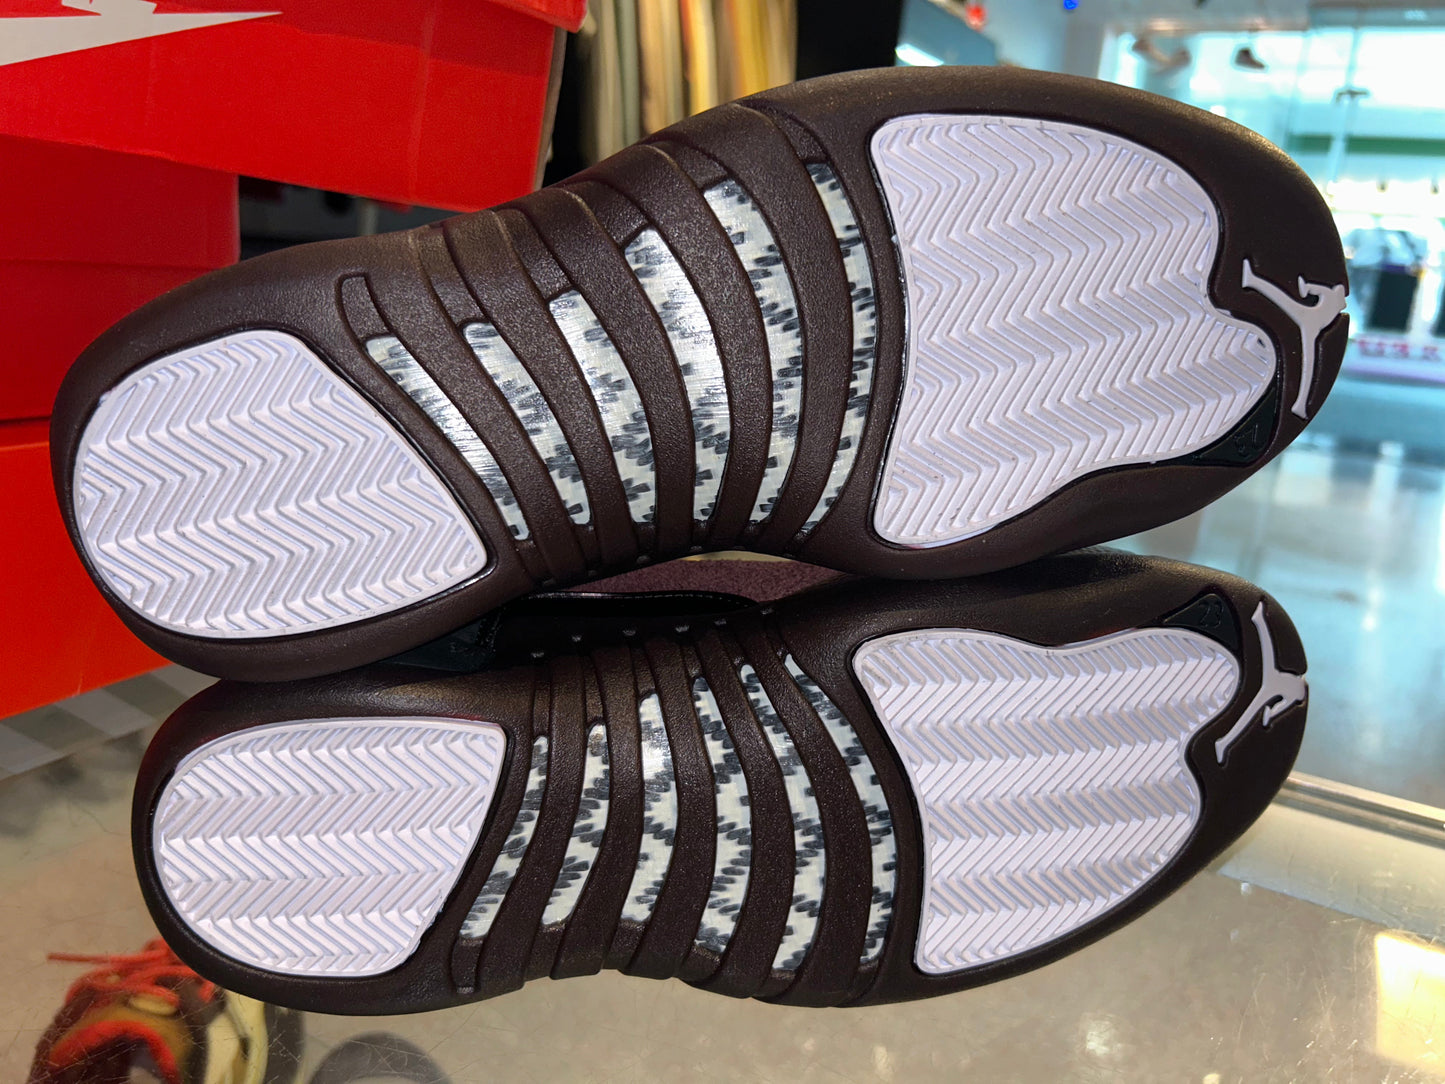 Size 8 (9.5W) Air Jordan 12 “A Ma Maniere Black” Brand New (Mall)